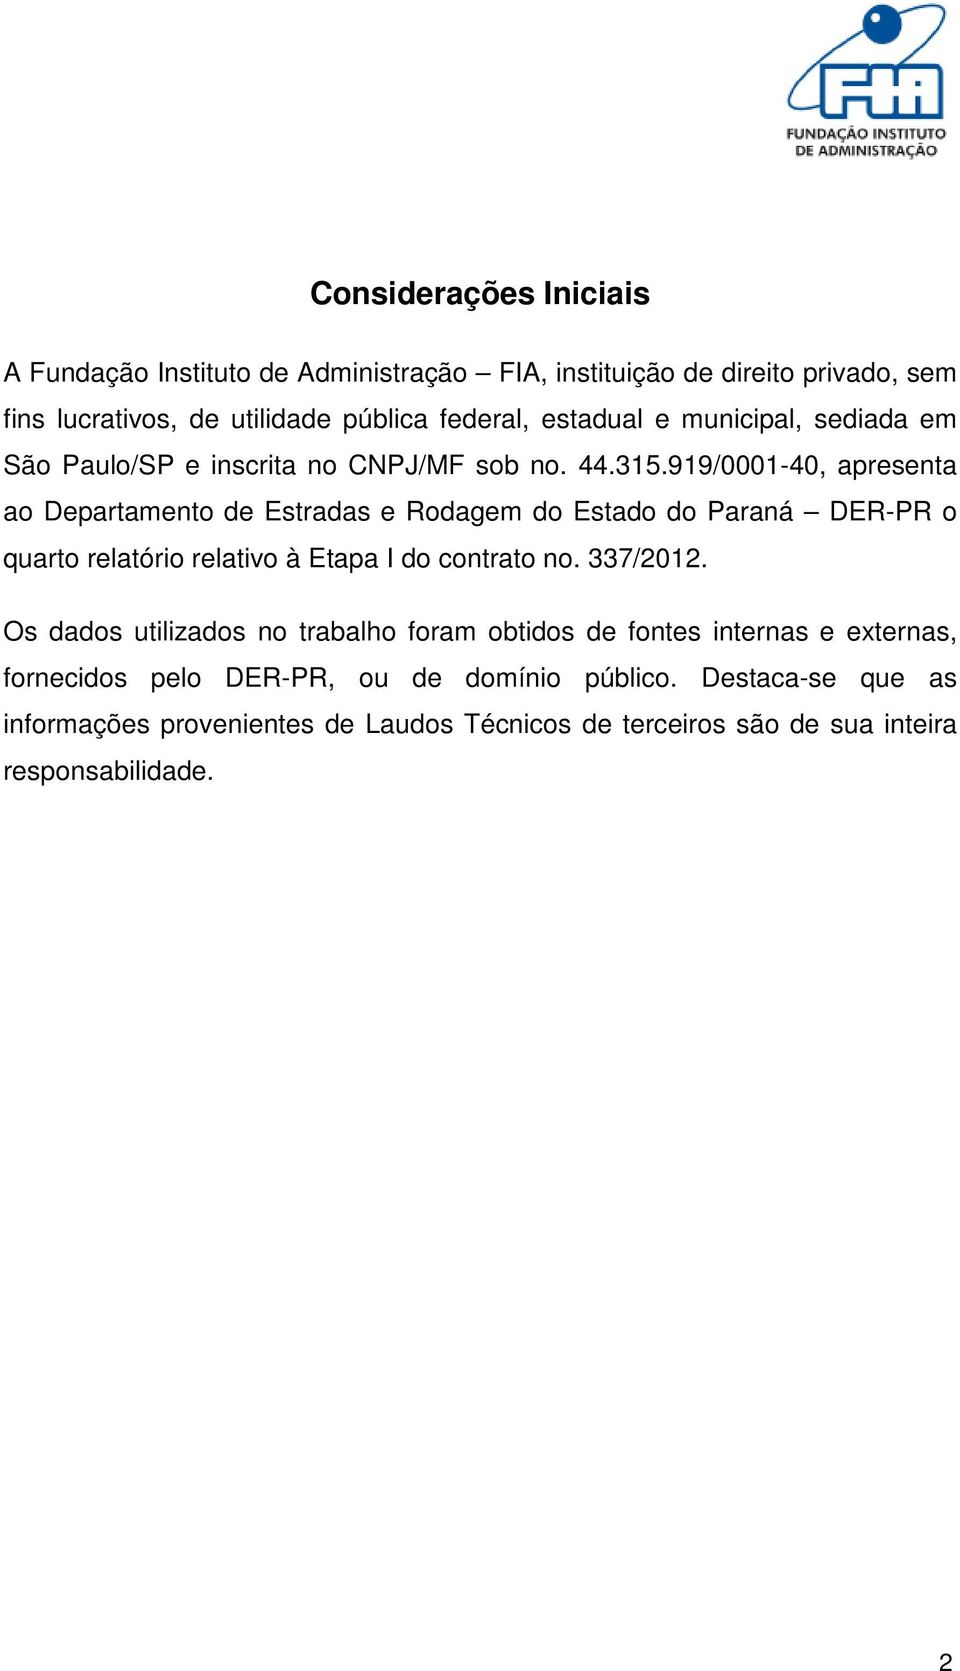 919/0001-40, apresenta ao Departamento de Estradas e Rodagem do Estado do Paraná DER-PR o quarto relatório relativo à Etapa I do contrato no. 337/2012.